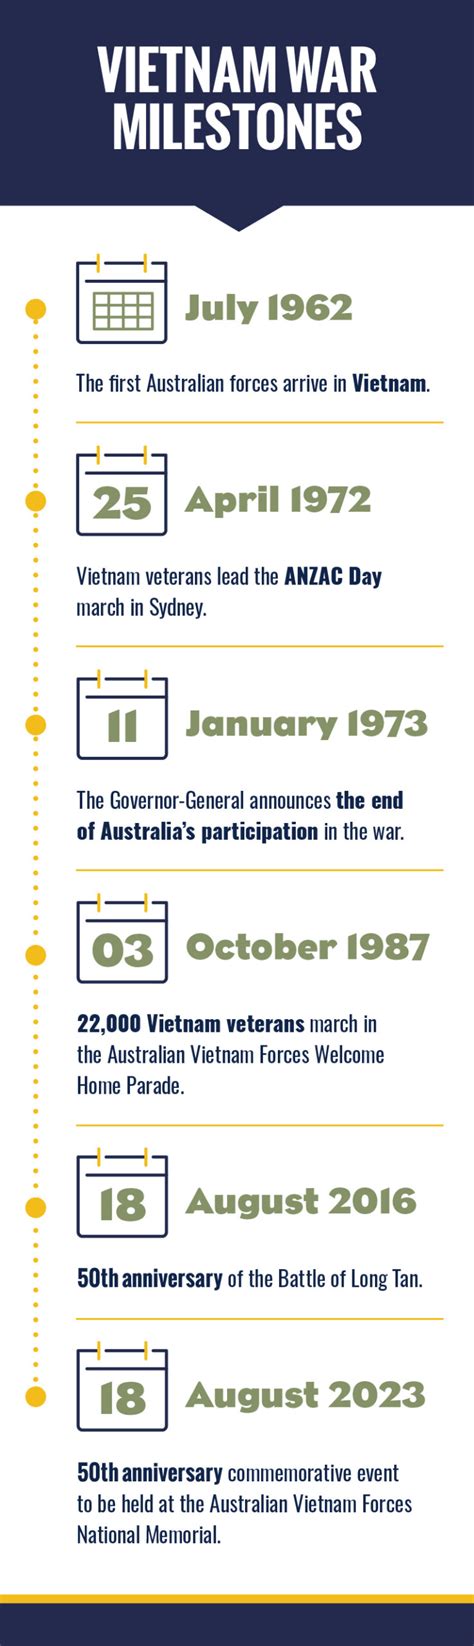 australian vietnam war dates